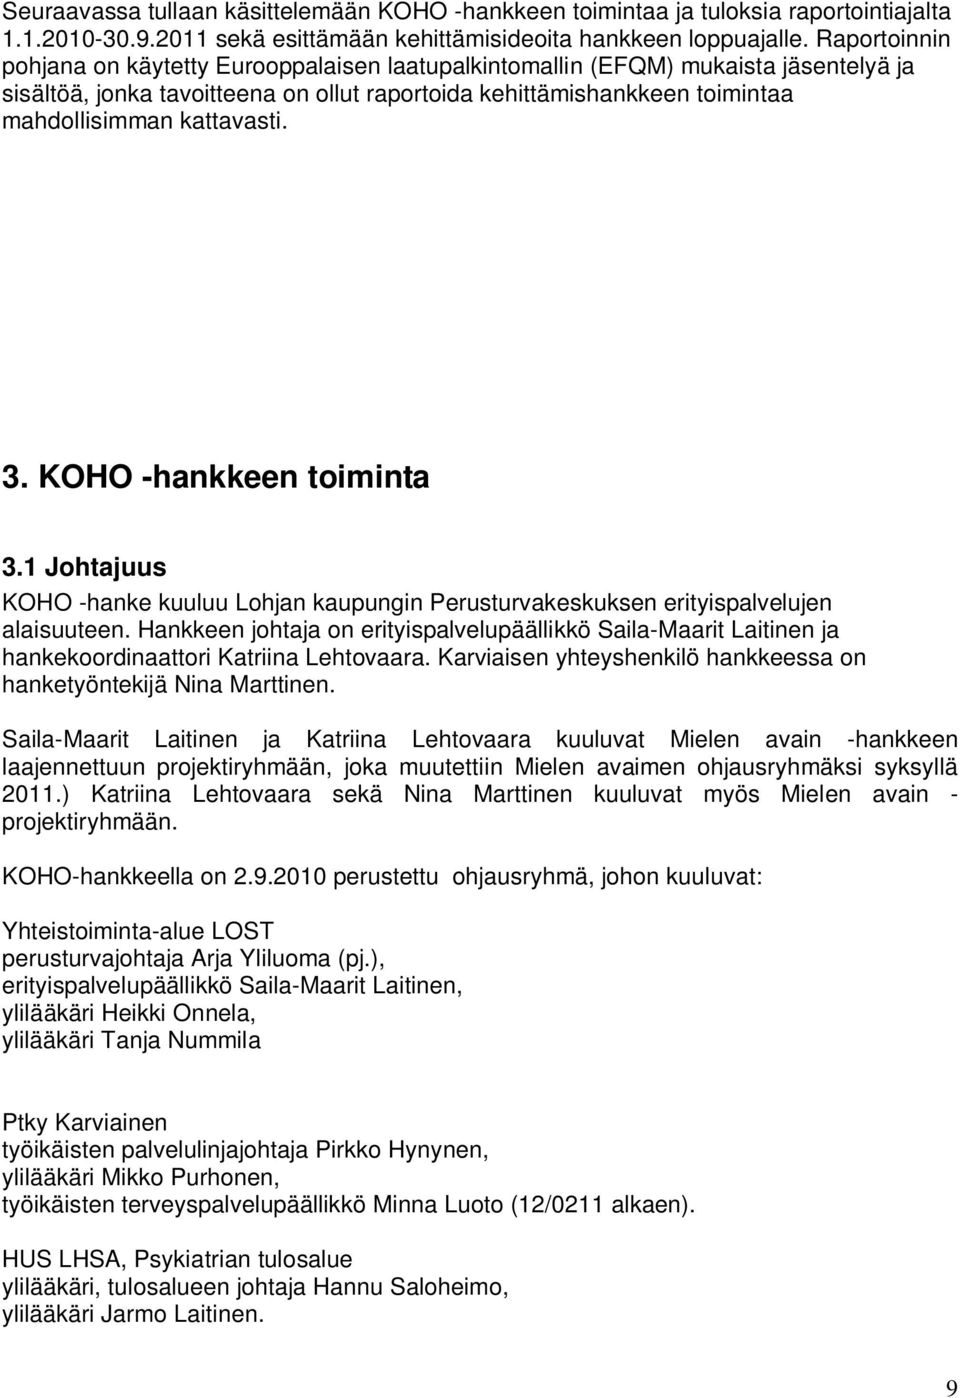 kattavasti. 3. KOHO -hankkeen toiminta 3.1 Johtajuus KOHO -hanke kuuluu Lohjan kaupungin Perusturvakeskuksen erityispalvelujen alaisuuteen.